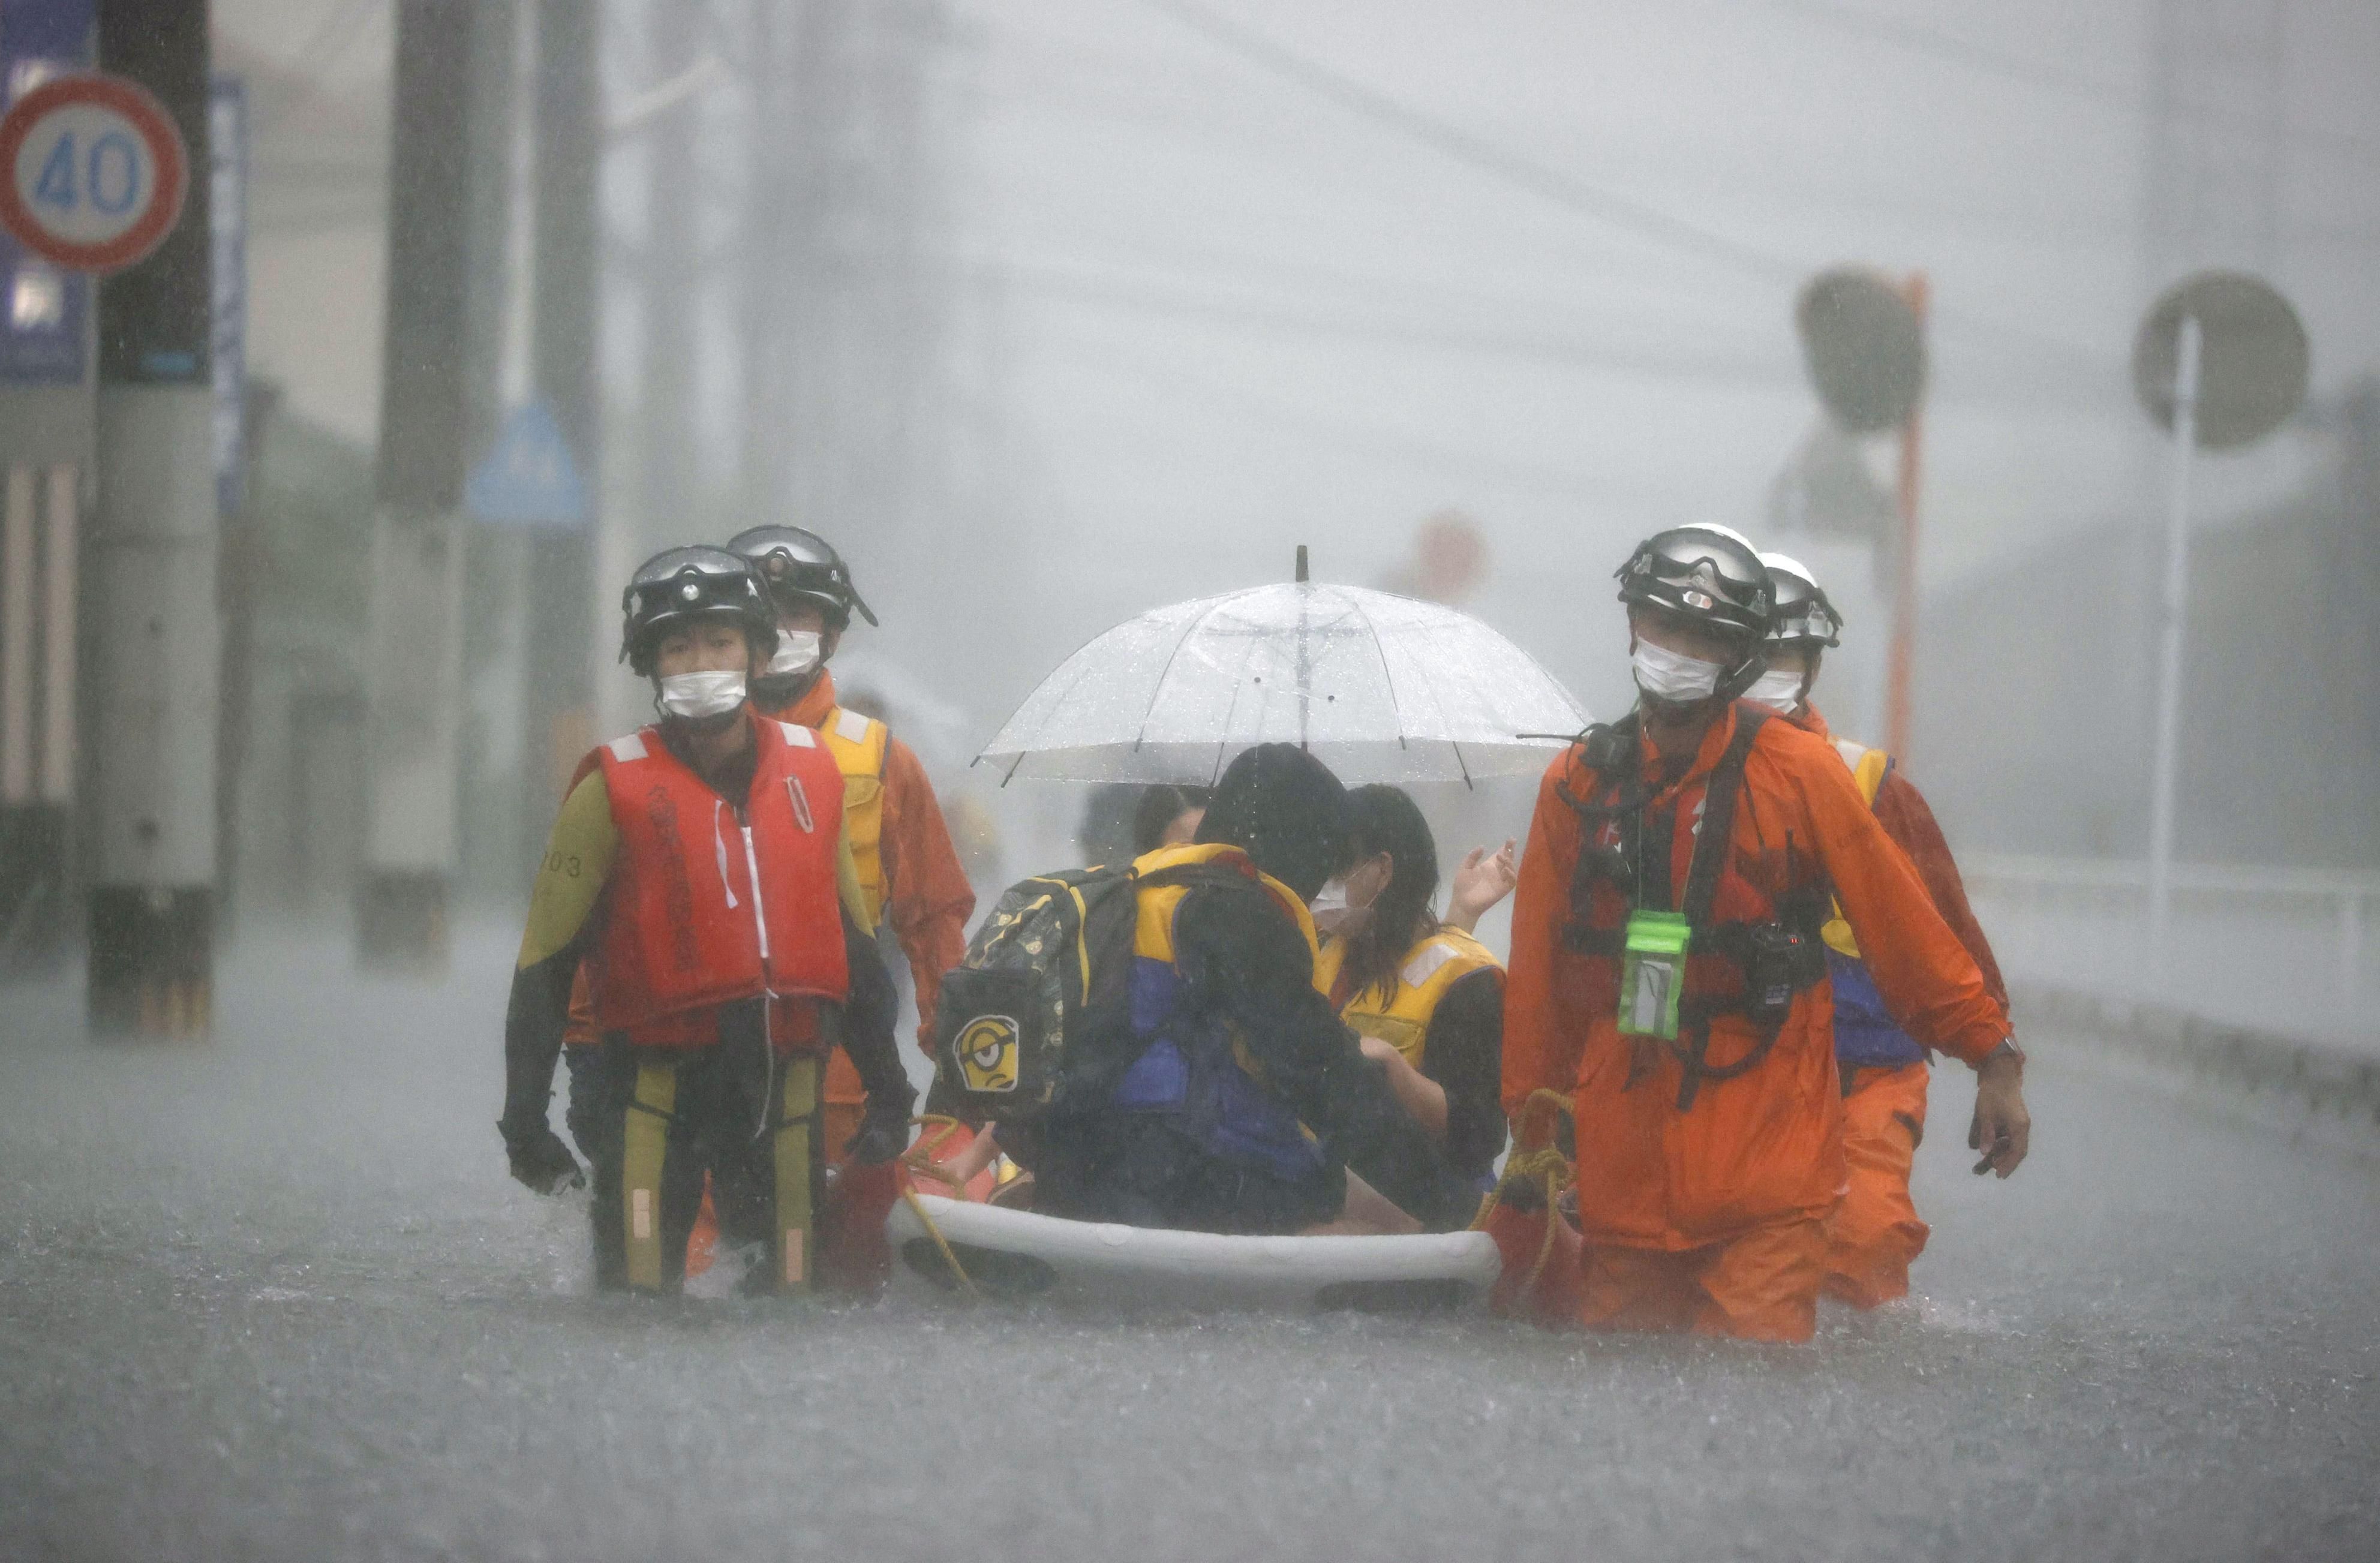 Reuters - ญี่ปุ่น ฝนตกหนัก น้ำท่วม อพยพ 2 ล้าน